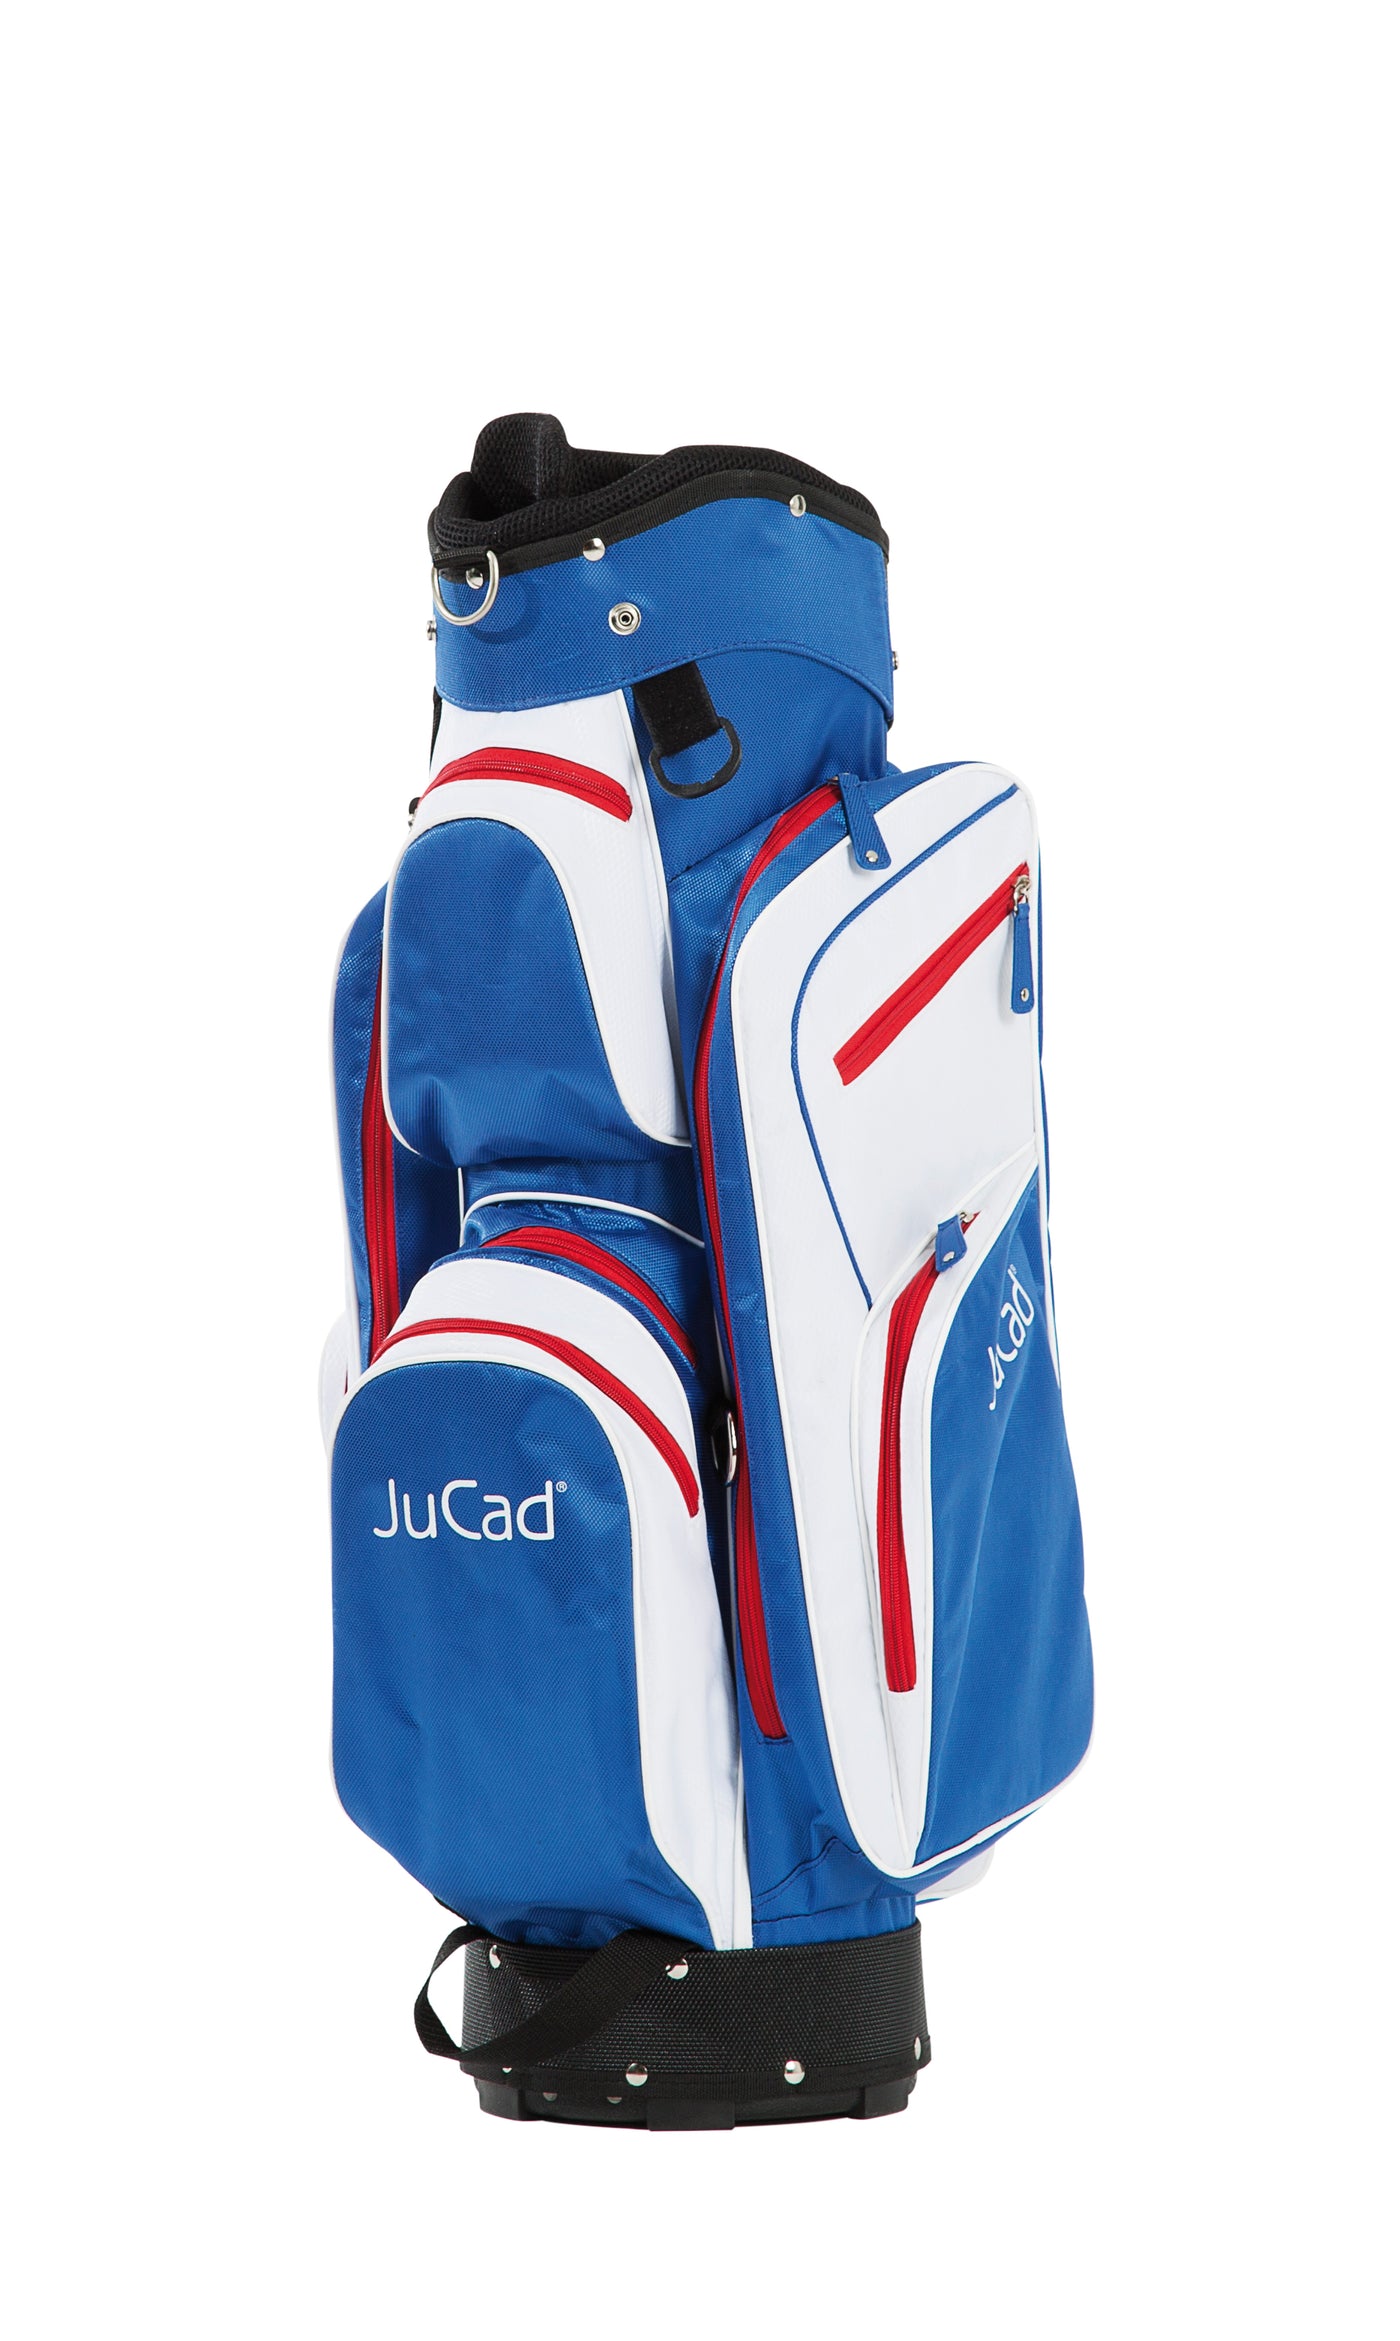 JuCad Golfbag Junior - das funktionelle Golfbag für Kinder